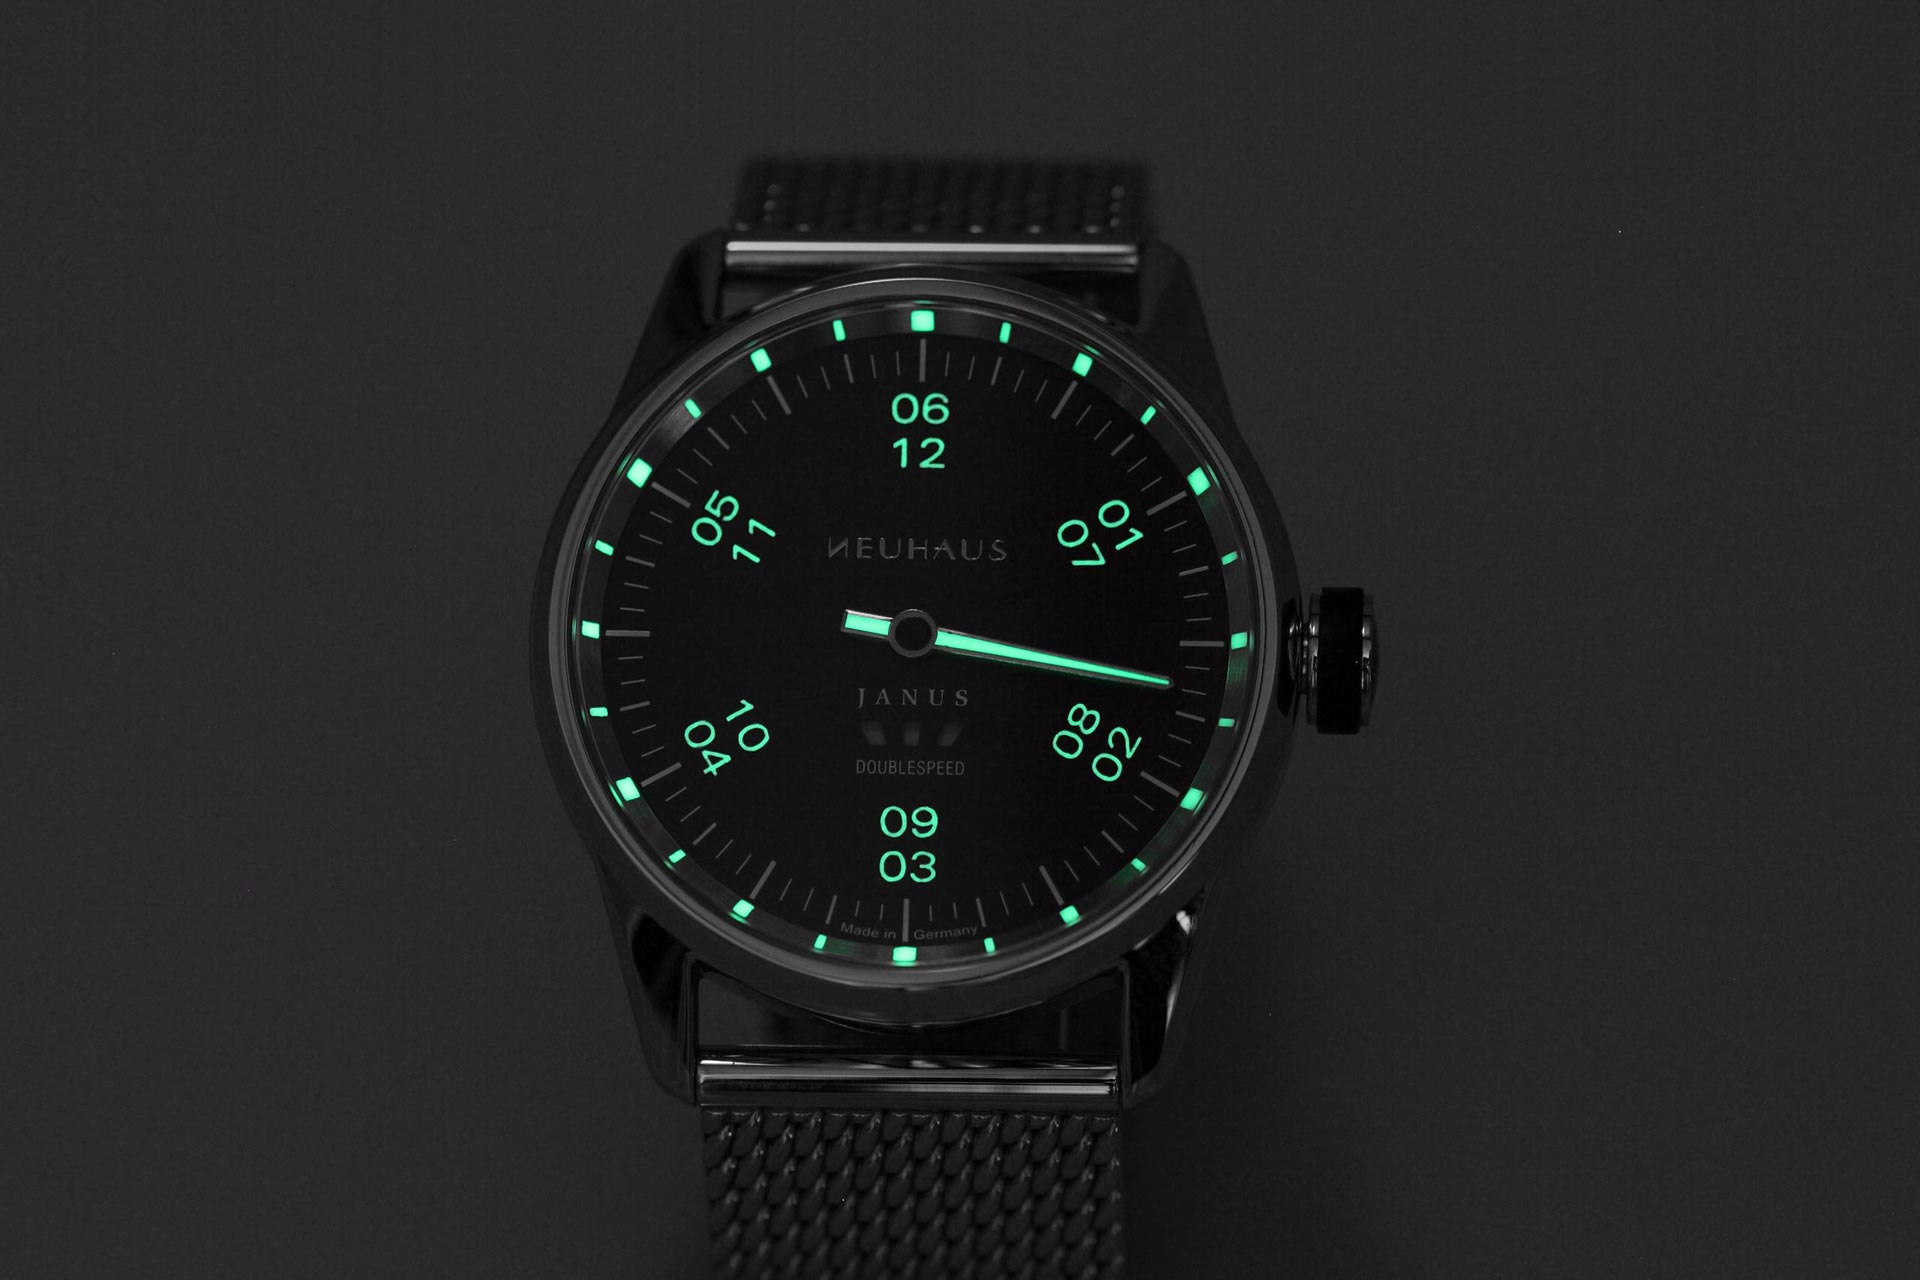 Einzeigeruhr von NEUHAUS Timepieces, Modell JANUS DoubleSpeed, leuchtend mobil